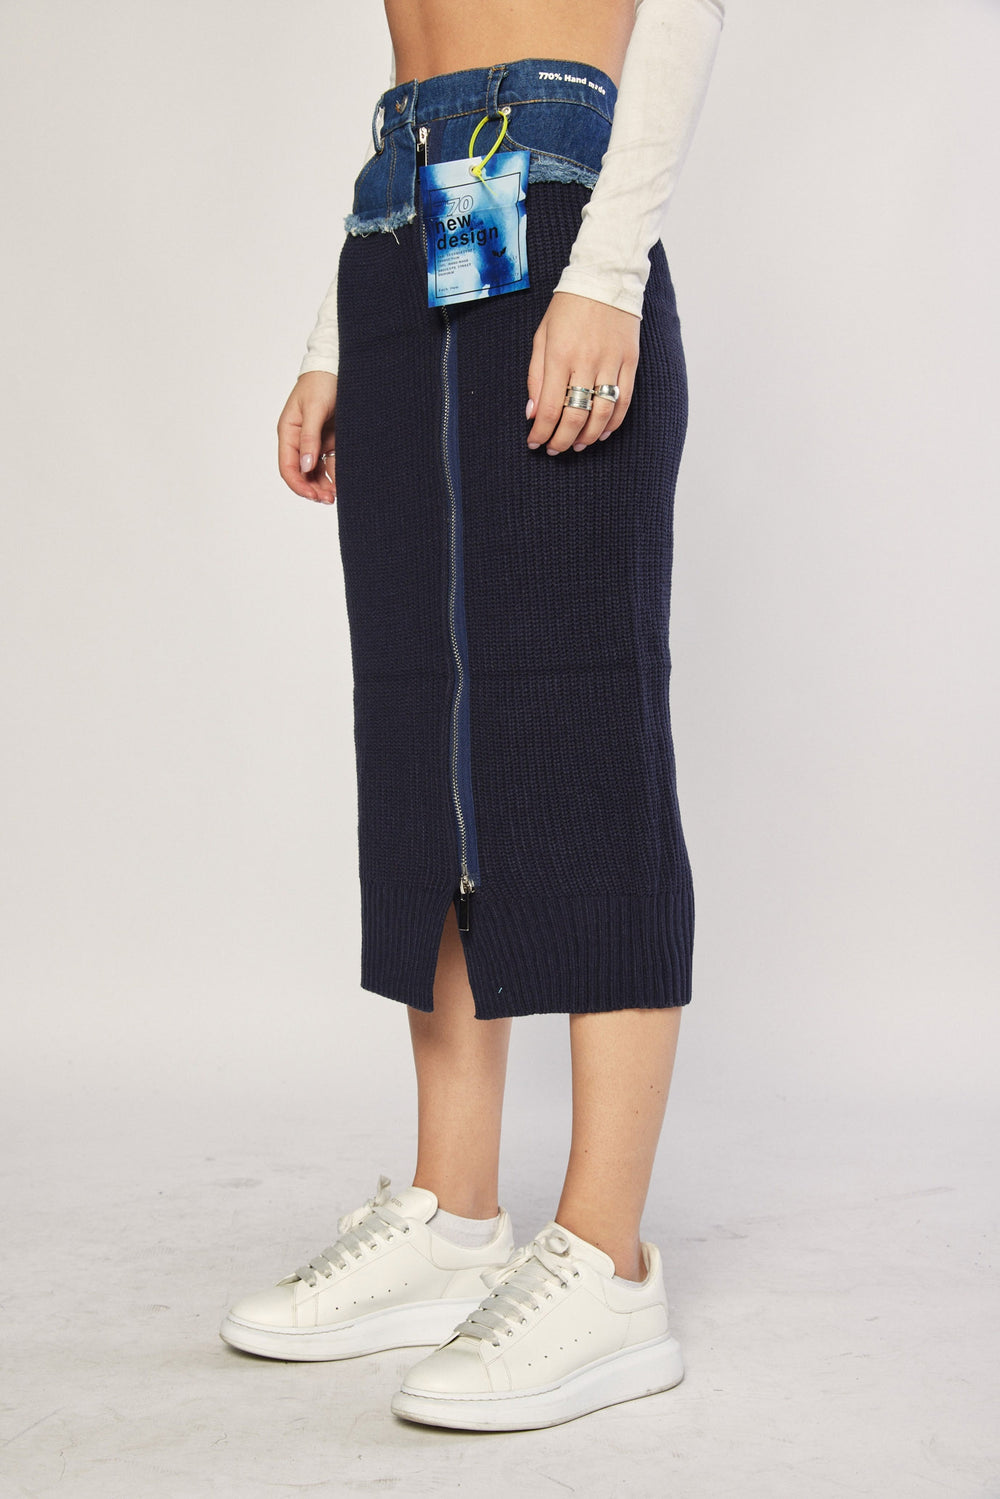 Navy Half Knit Midi Skirt at Runway Secrets